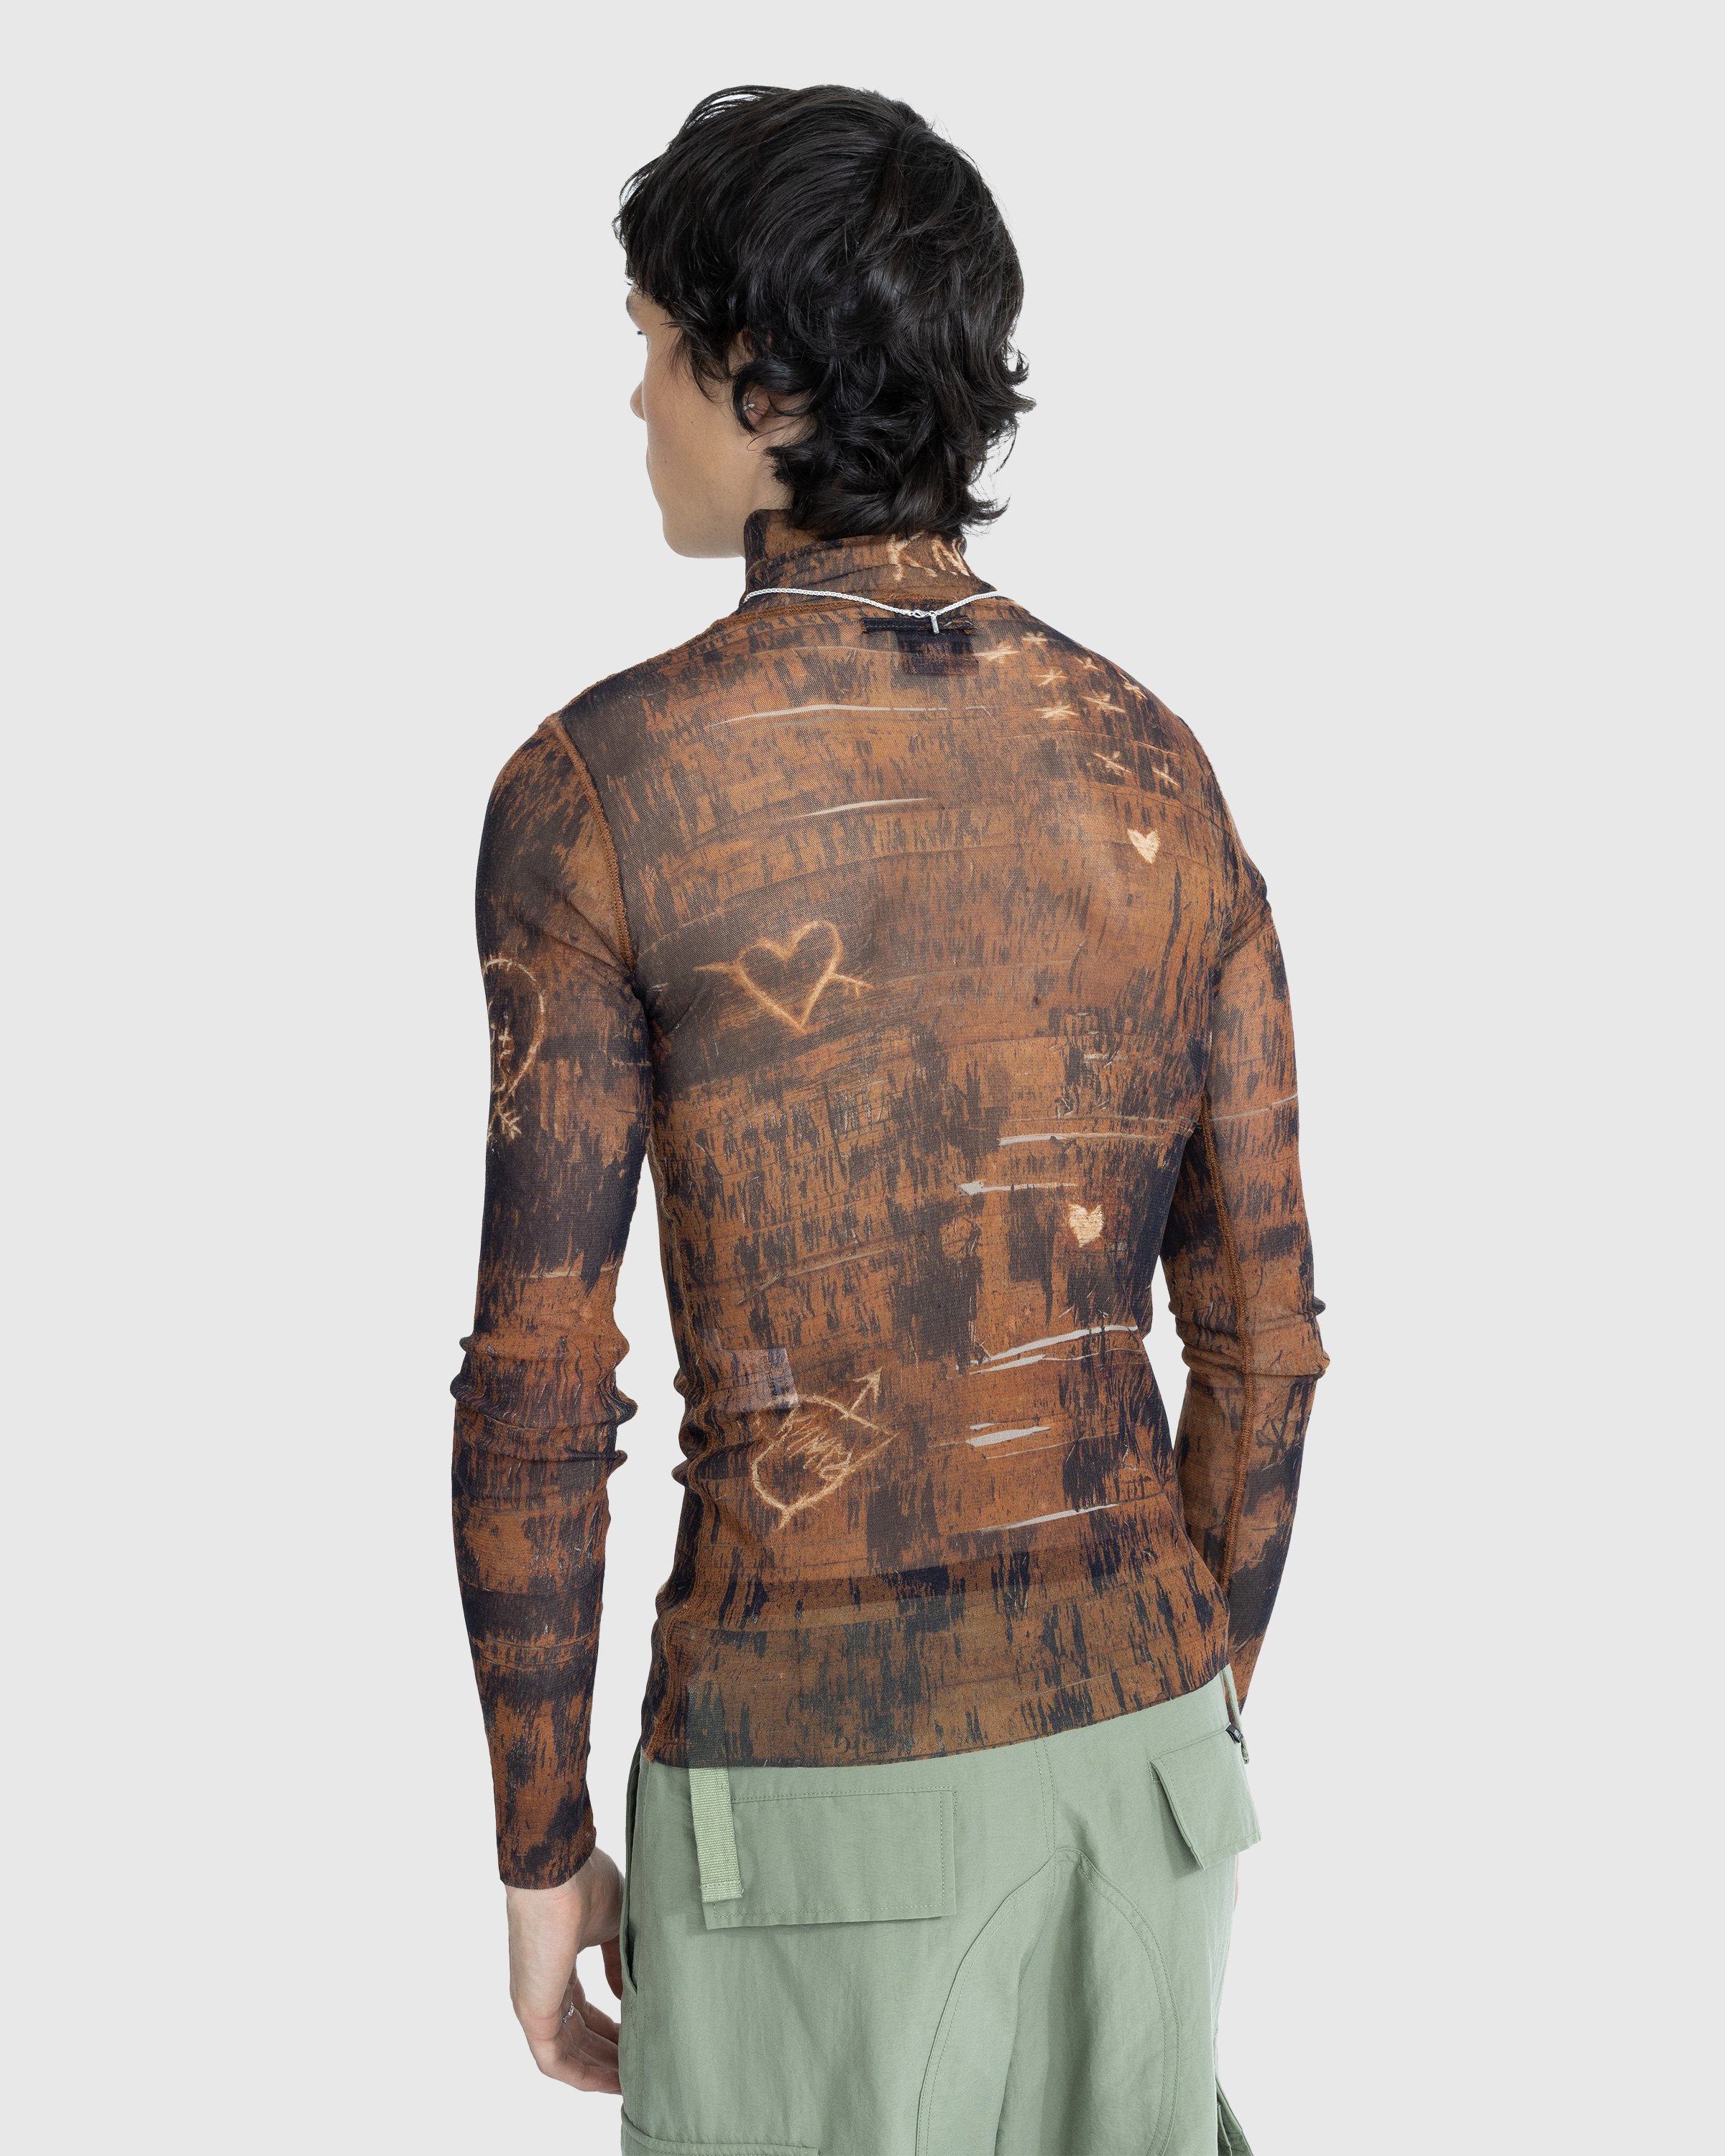 Jean Paul Gaultier - High Neck Longsleeve Printed Wood Top Brown/Ecru - Clothing - Brown - Image 3